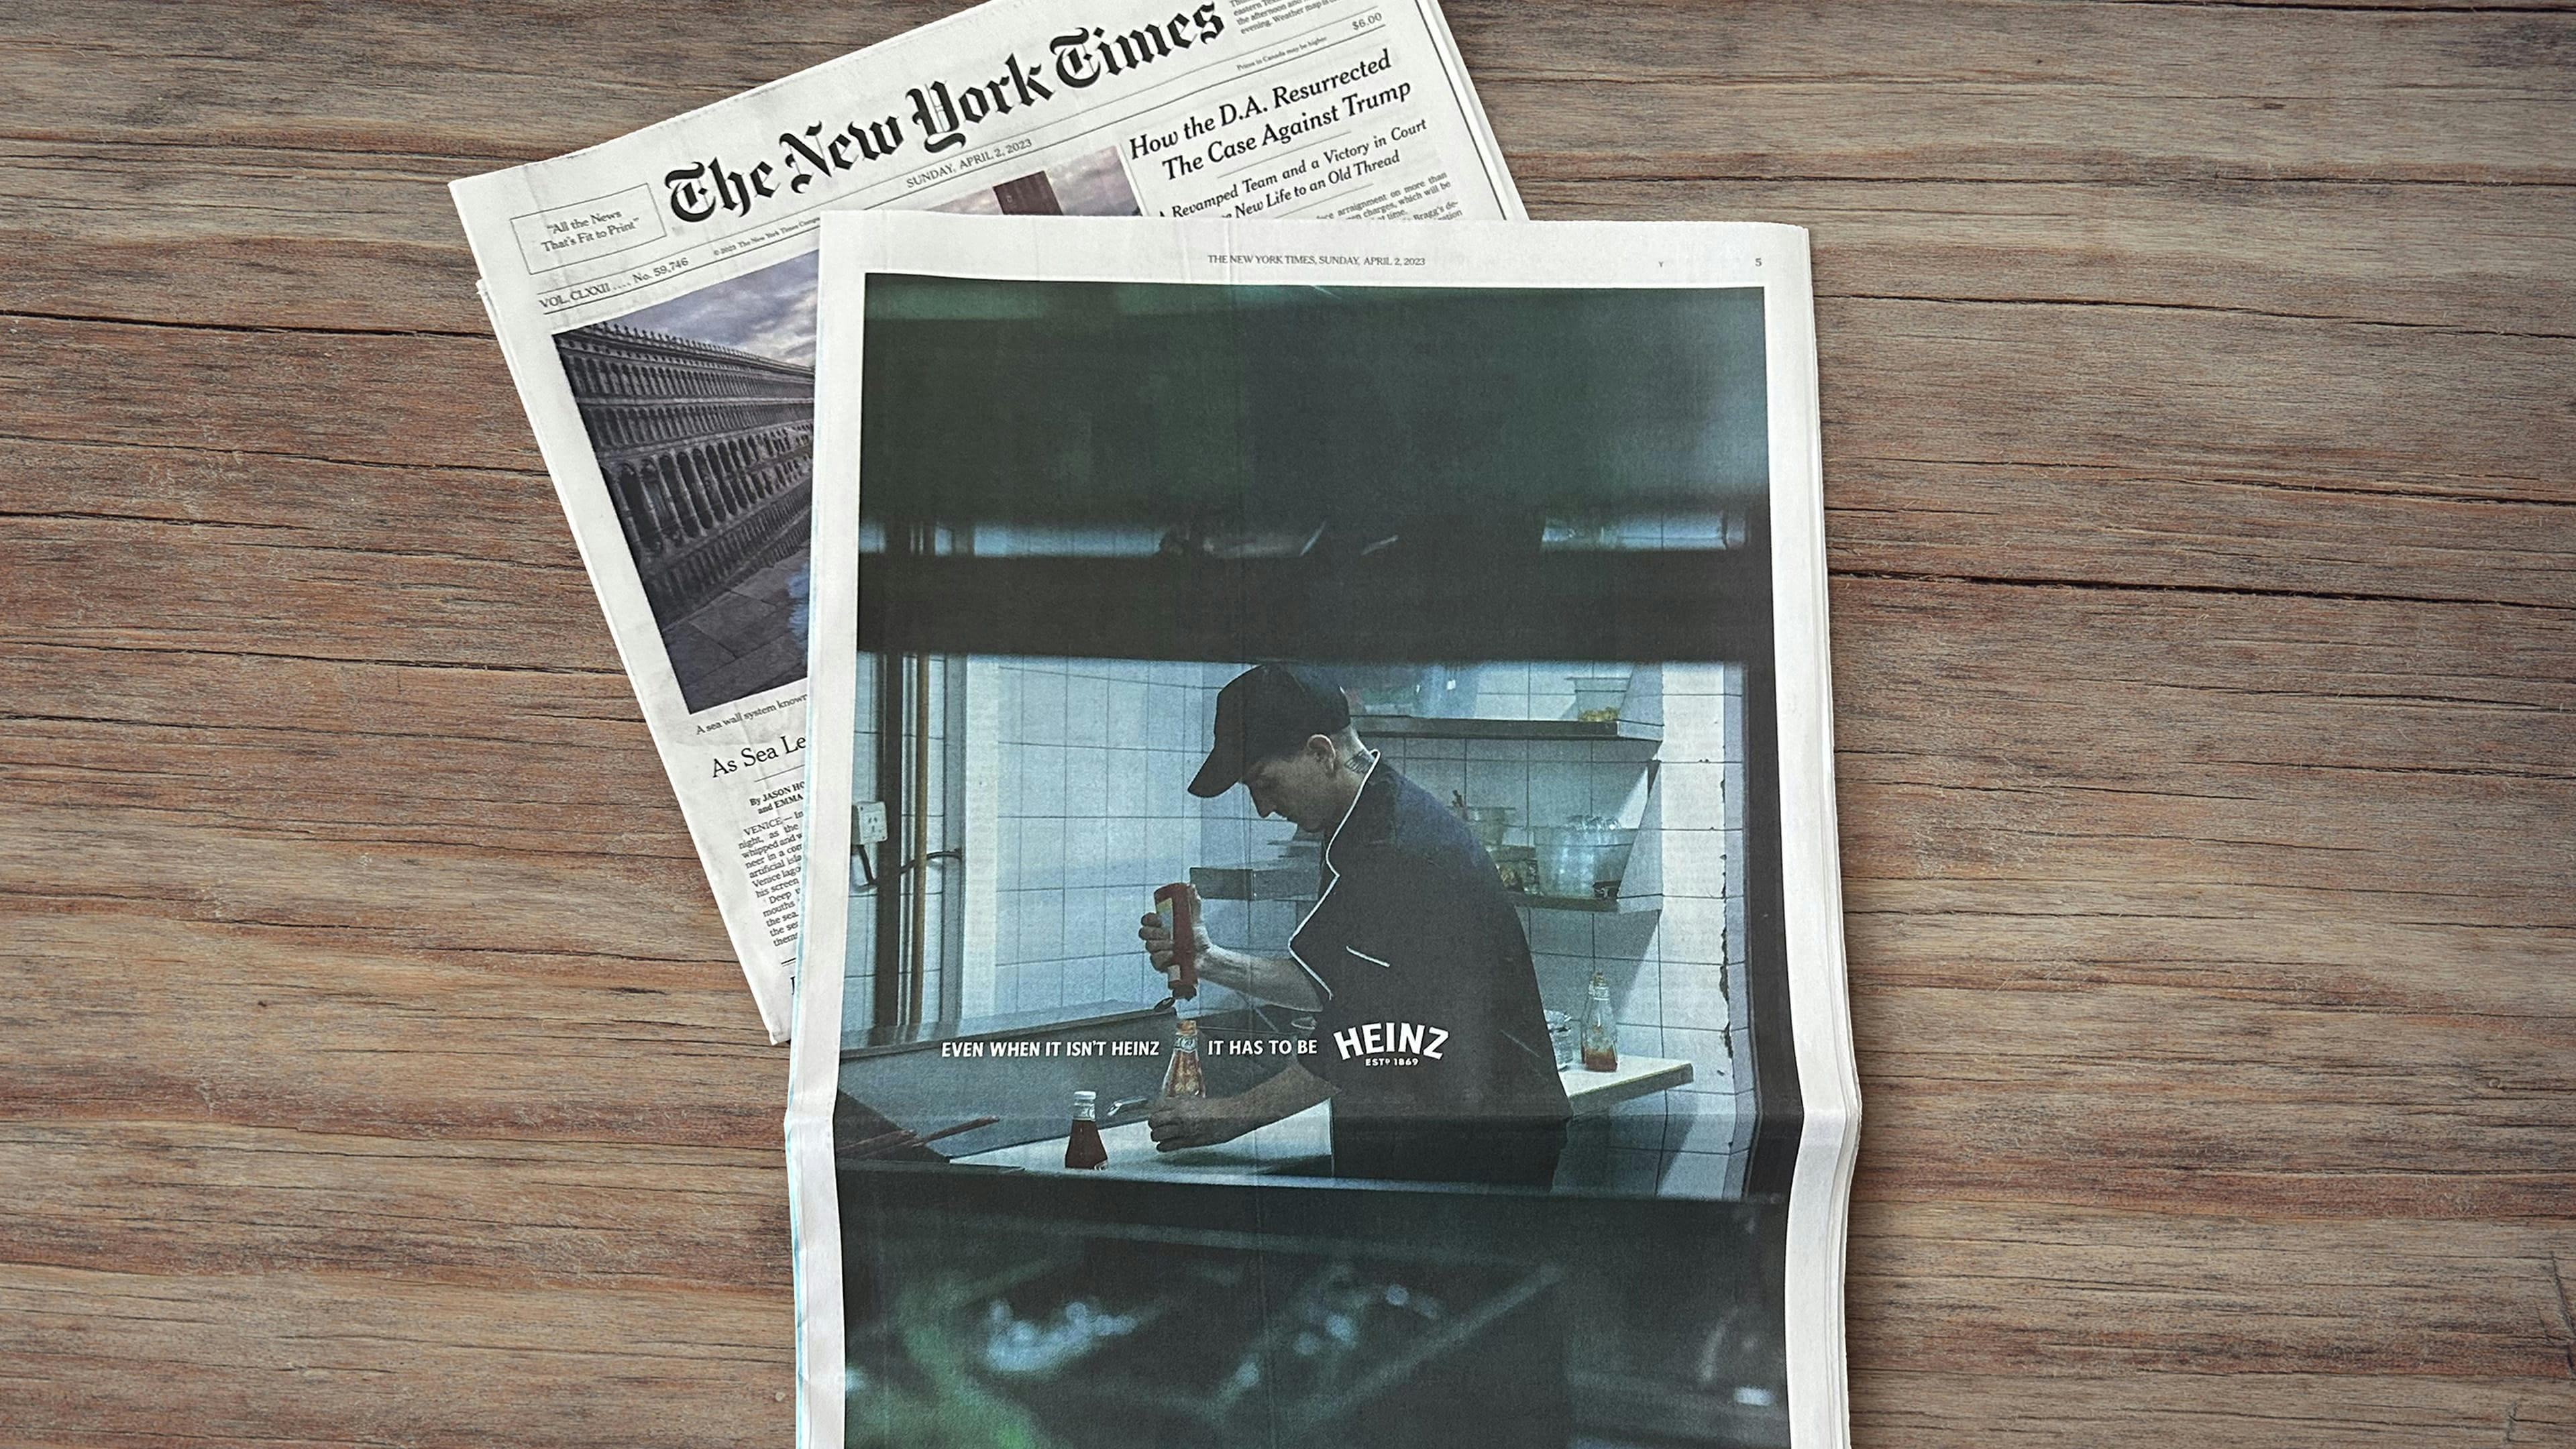 Le journal New York Times est déposé sur une surface en bois, et on peut y voir une publicité montrant un chef cuisinier en train de transvider une bouteille de ketchup qui n’est pas du Heinz dans une bouteille Heinz.